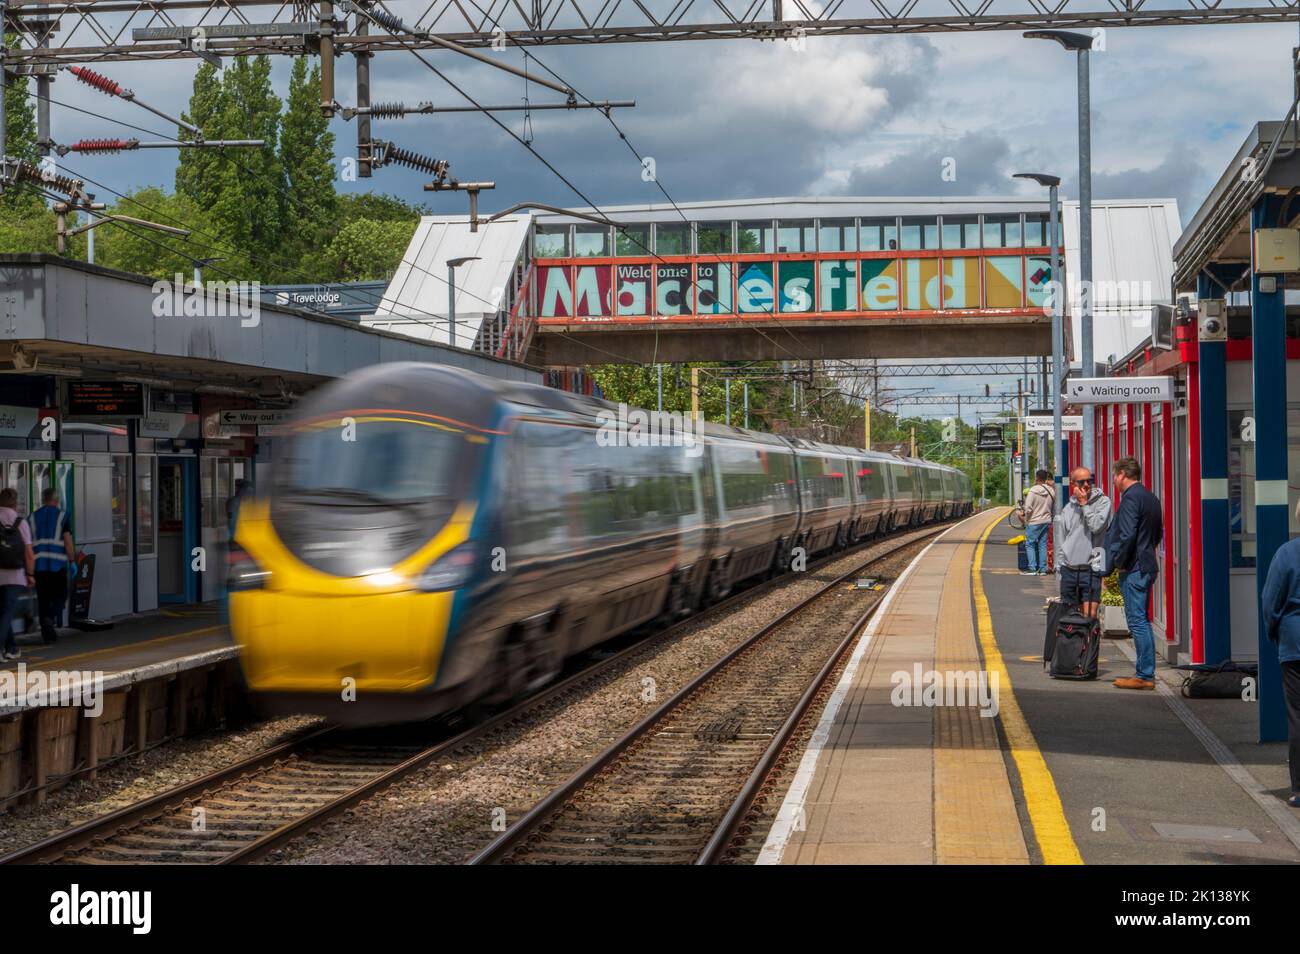 Train en direction de Manchester traversant la gare de Macclesfield, Macclesfield, Cheshire, Angleterre, Royaume-Uni, Europe Banque D'Images